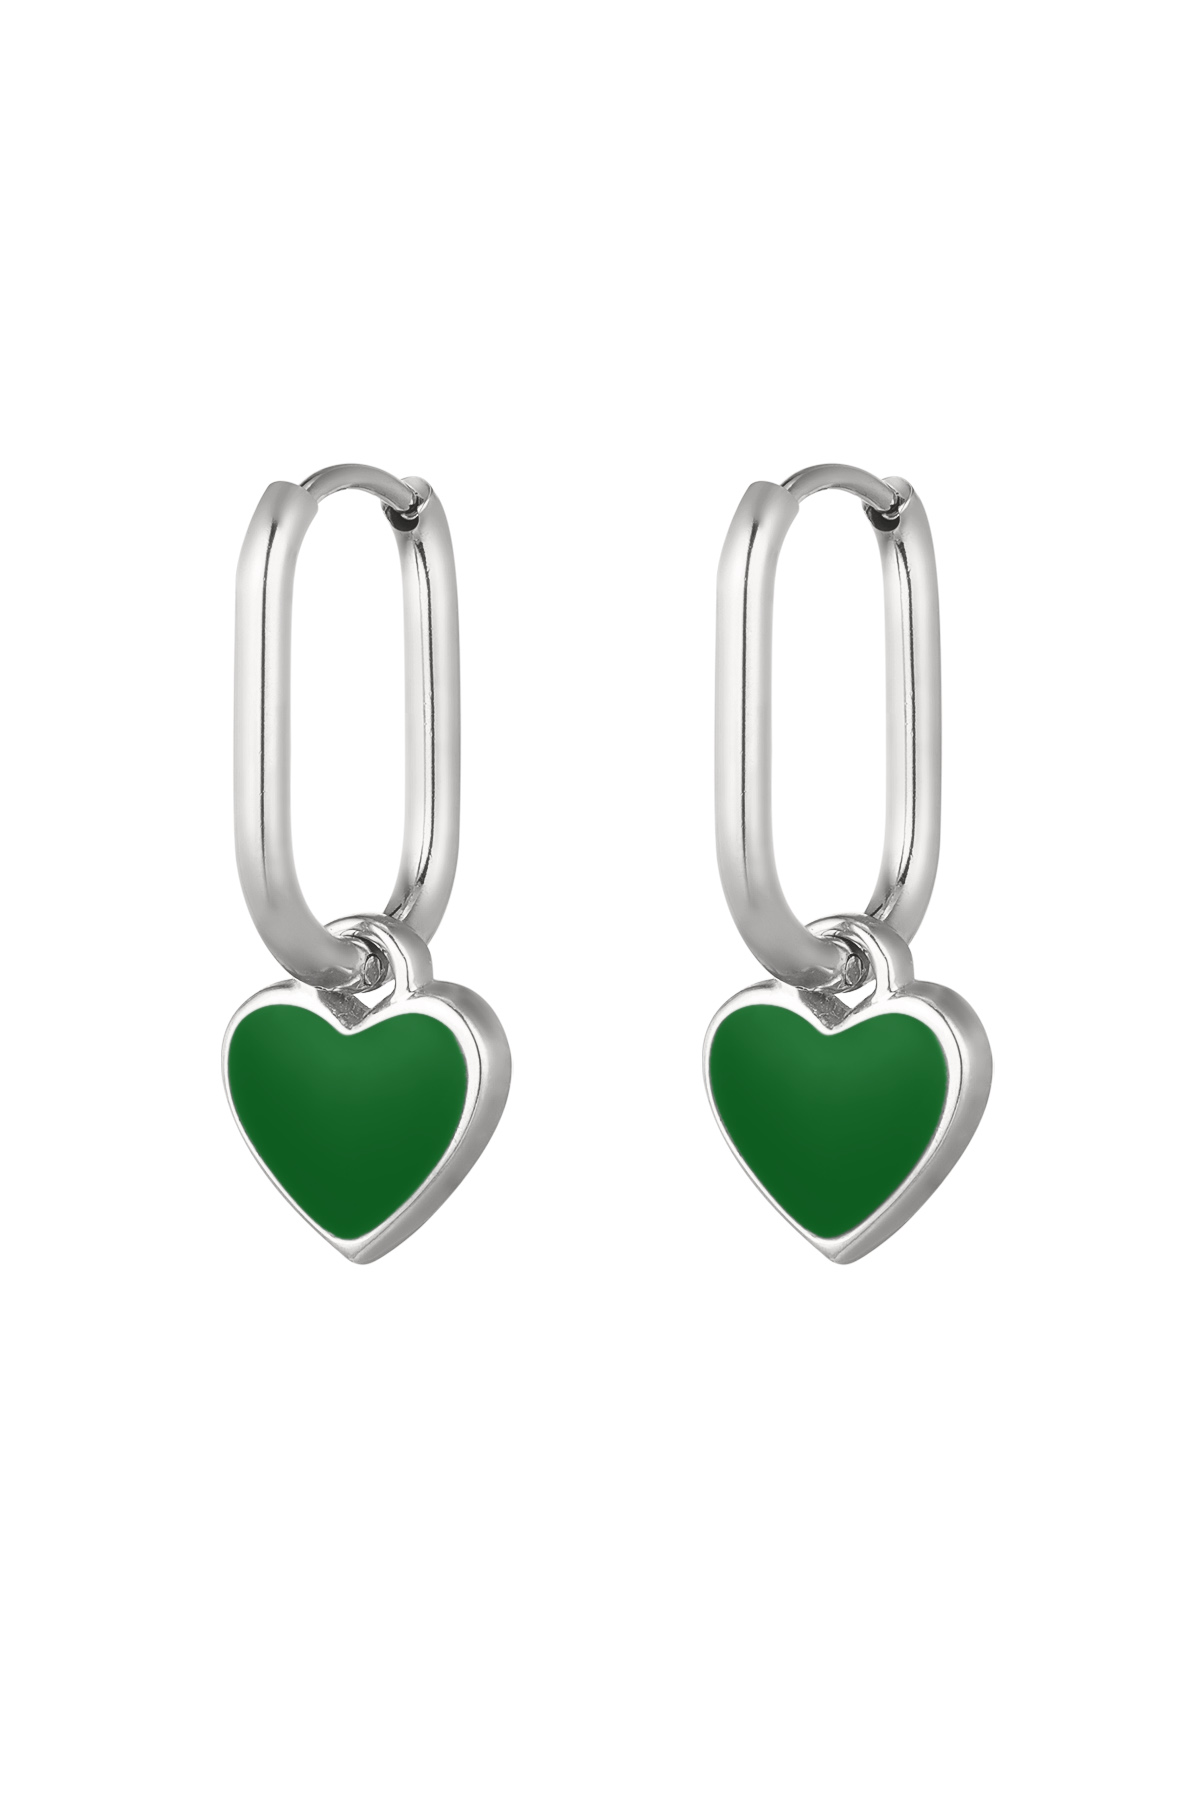 Orecchini cuore colorato Verde/argento Acciaio inossidabile h5 